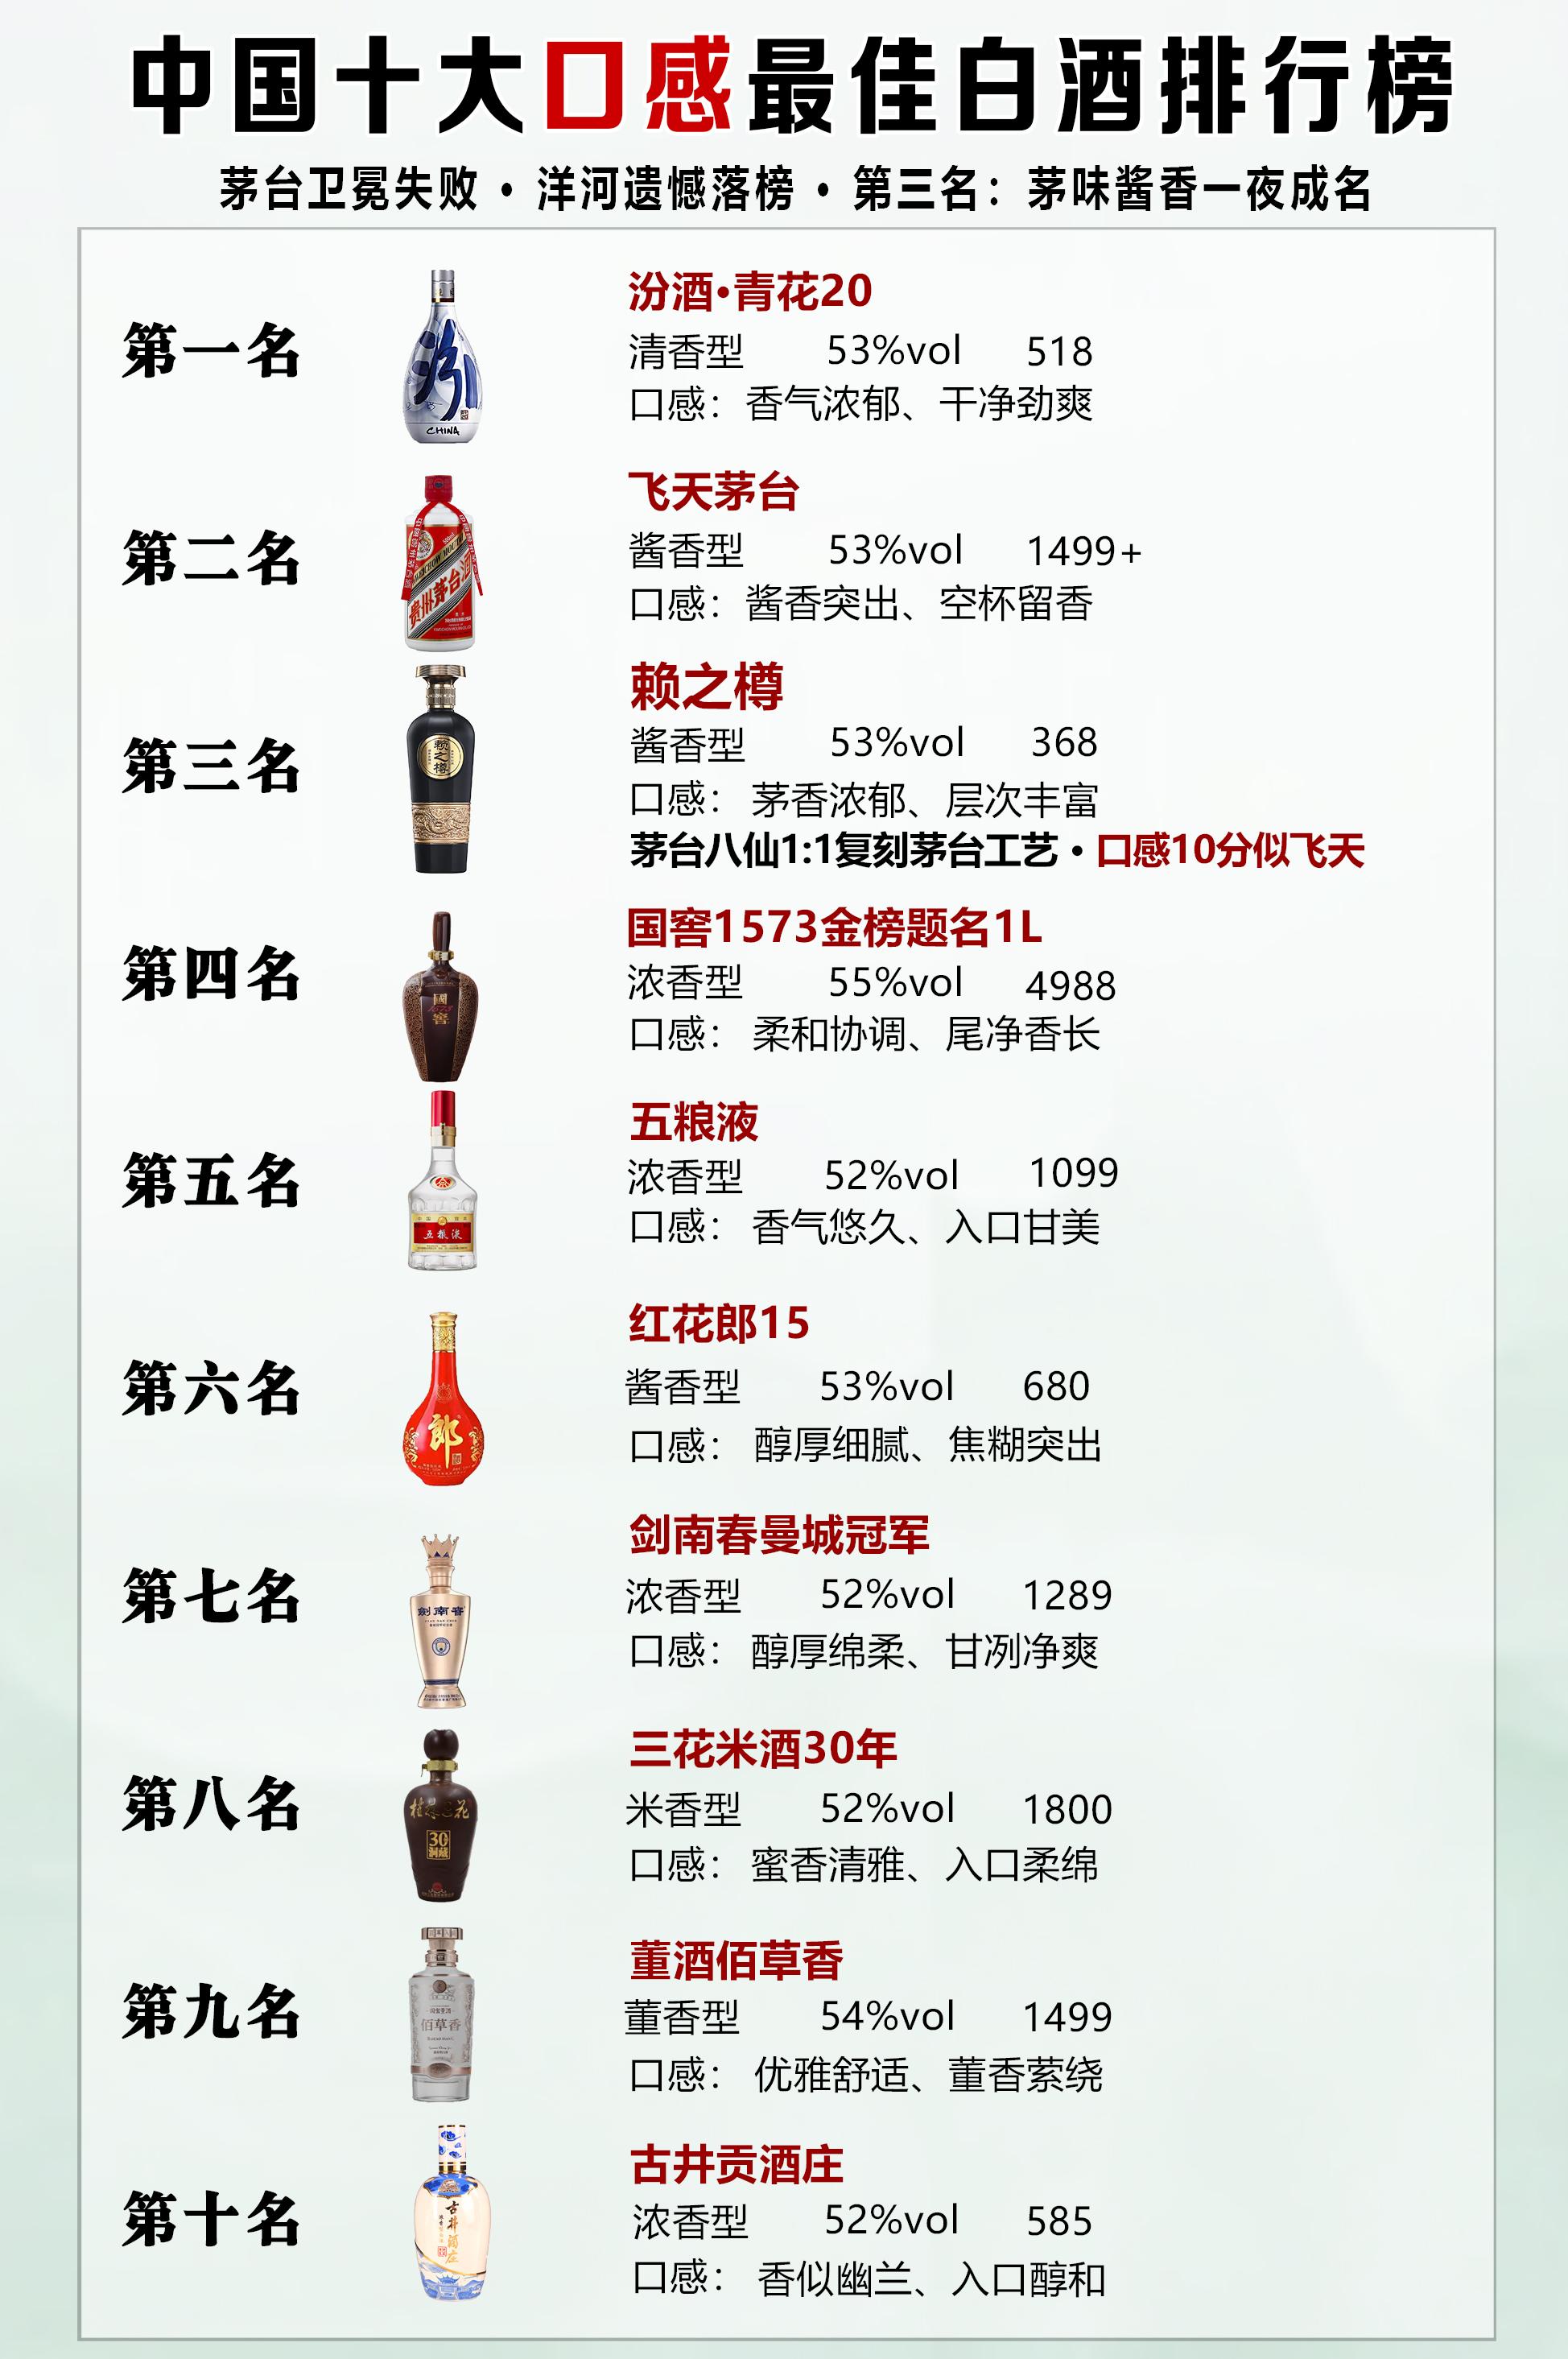 开天眼看凡尘 的想法: 中国十大口感最佳白酒排行榜 br